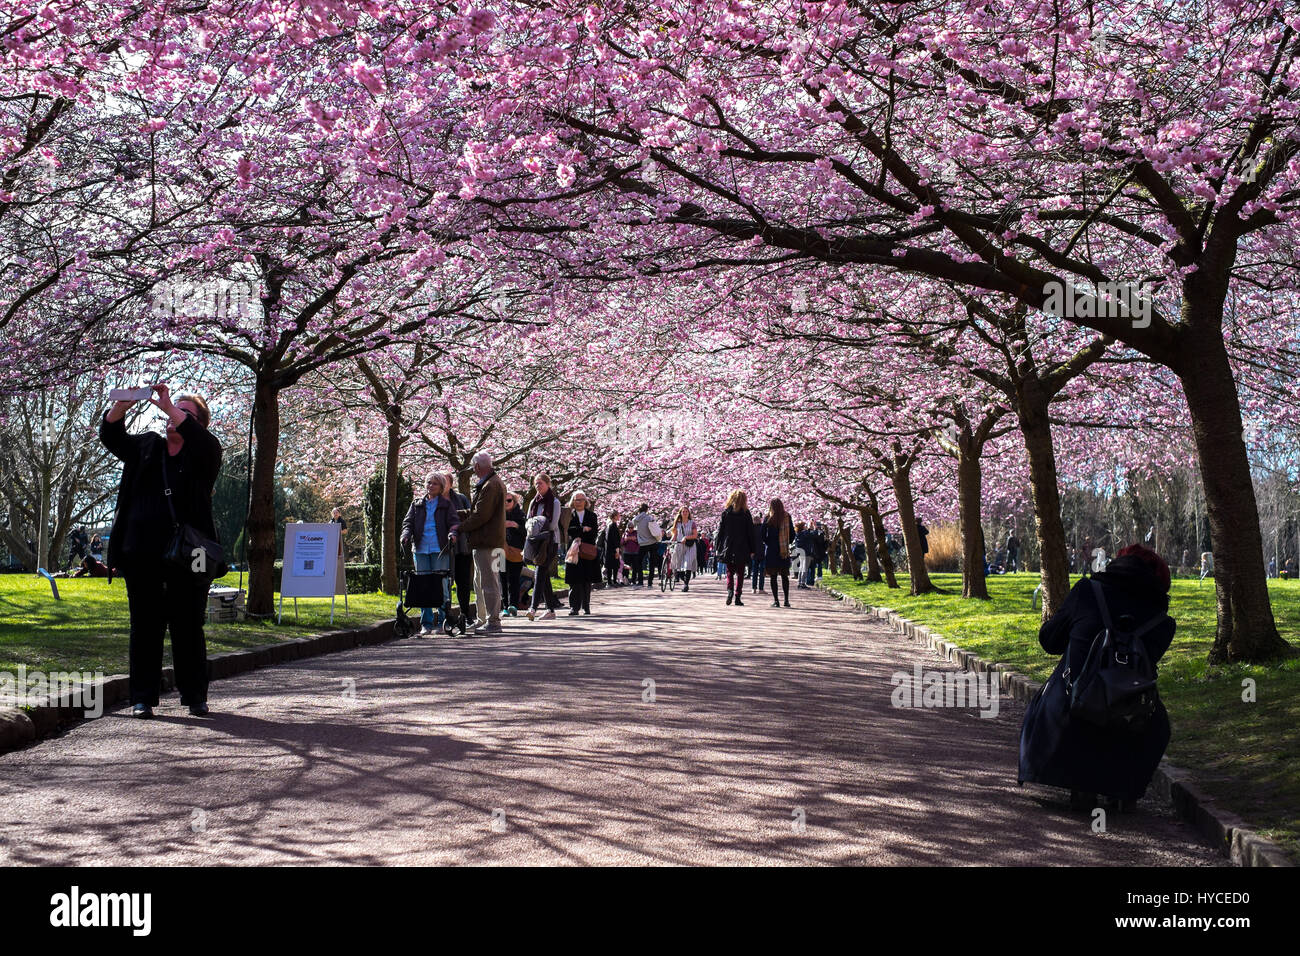 Frühling kommt in Dänemark. Einmal im Jahr strömen einheimische und Touristen in Bispebjerg Friedhof, Kopenhagen, um die Allee der rosa Kirschenbaum Blüten genießen. Stockfoto